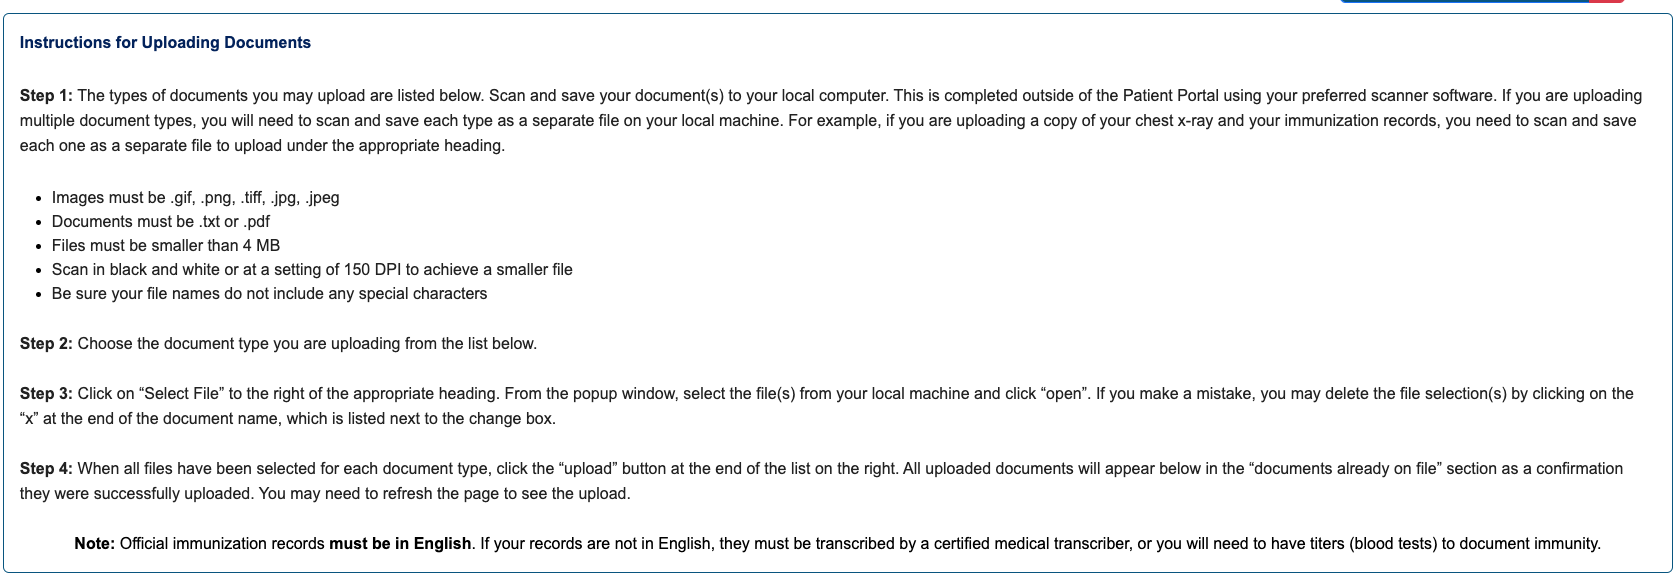 Patient Portal document upload instructions